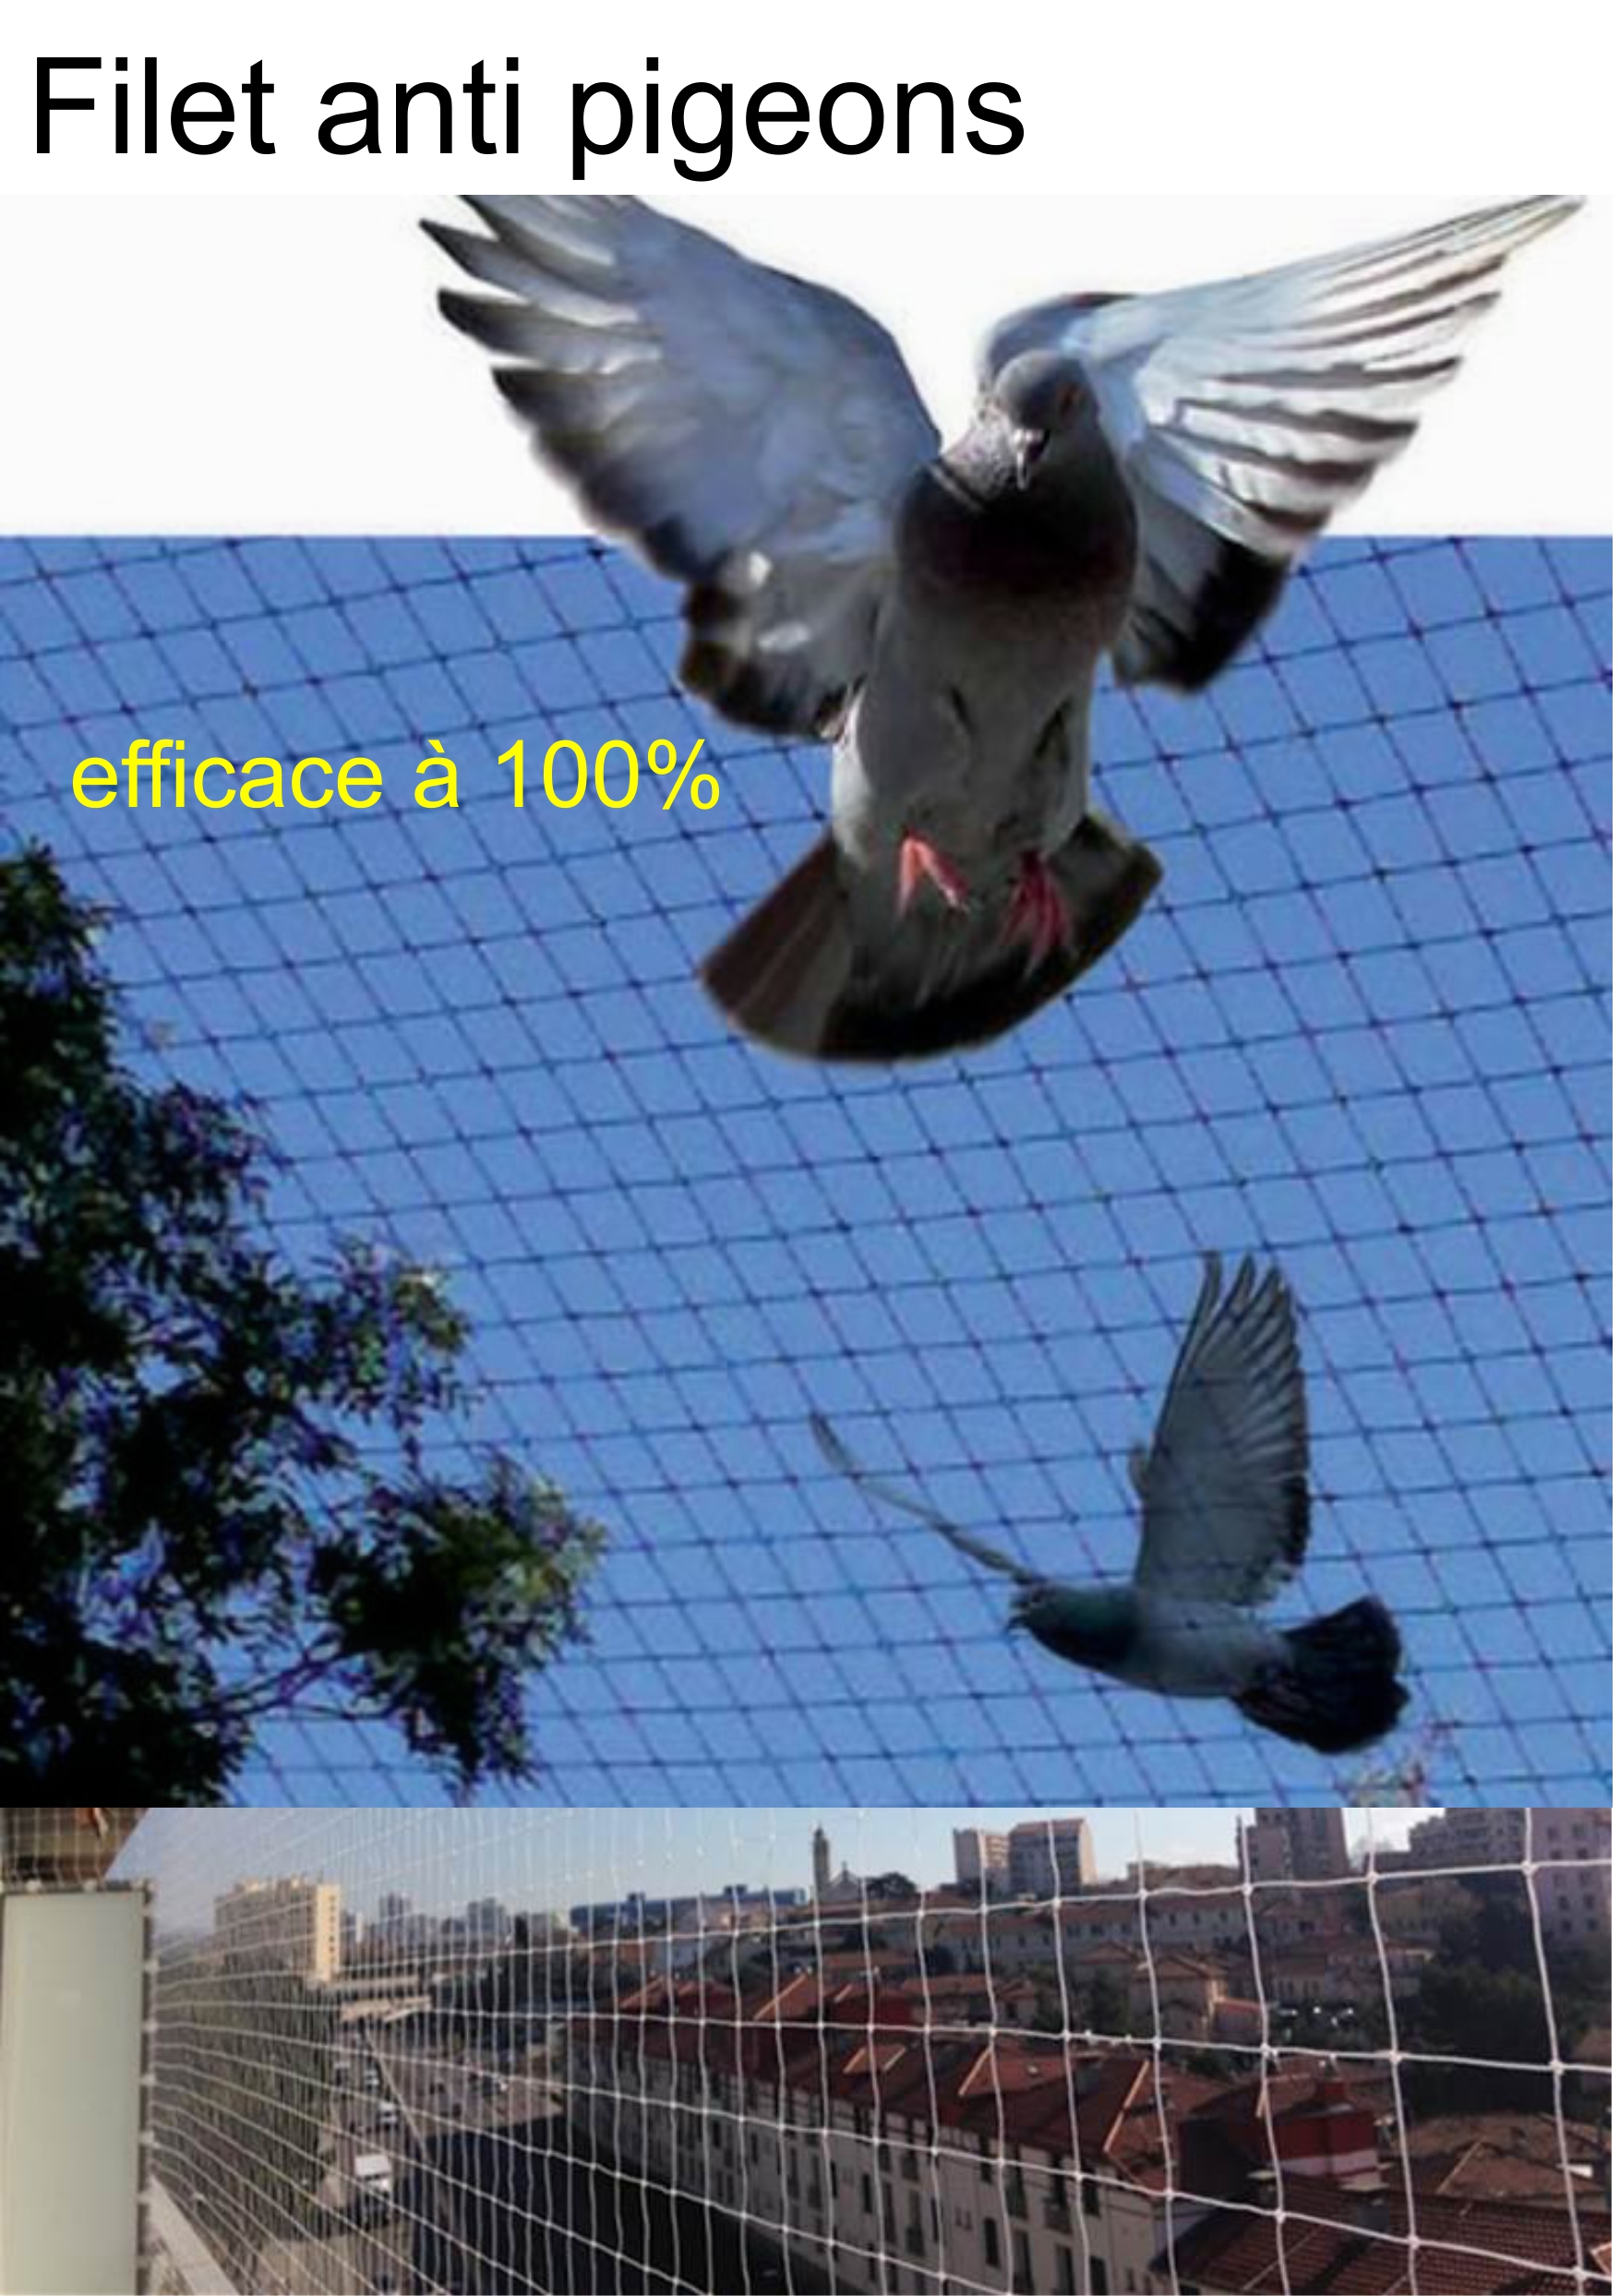 Filet anti pigeons efficace à 100%